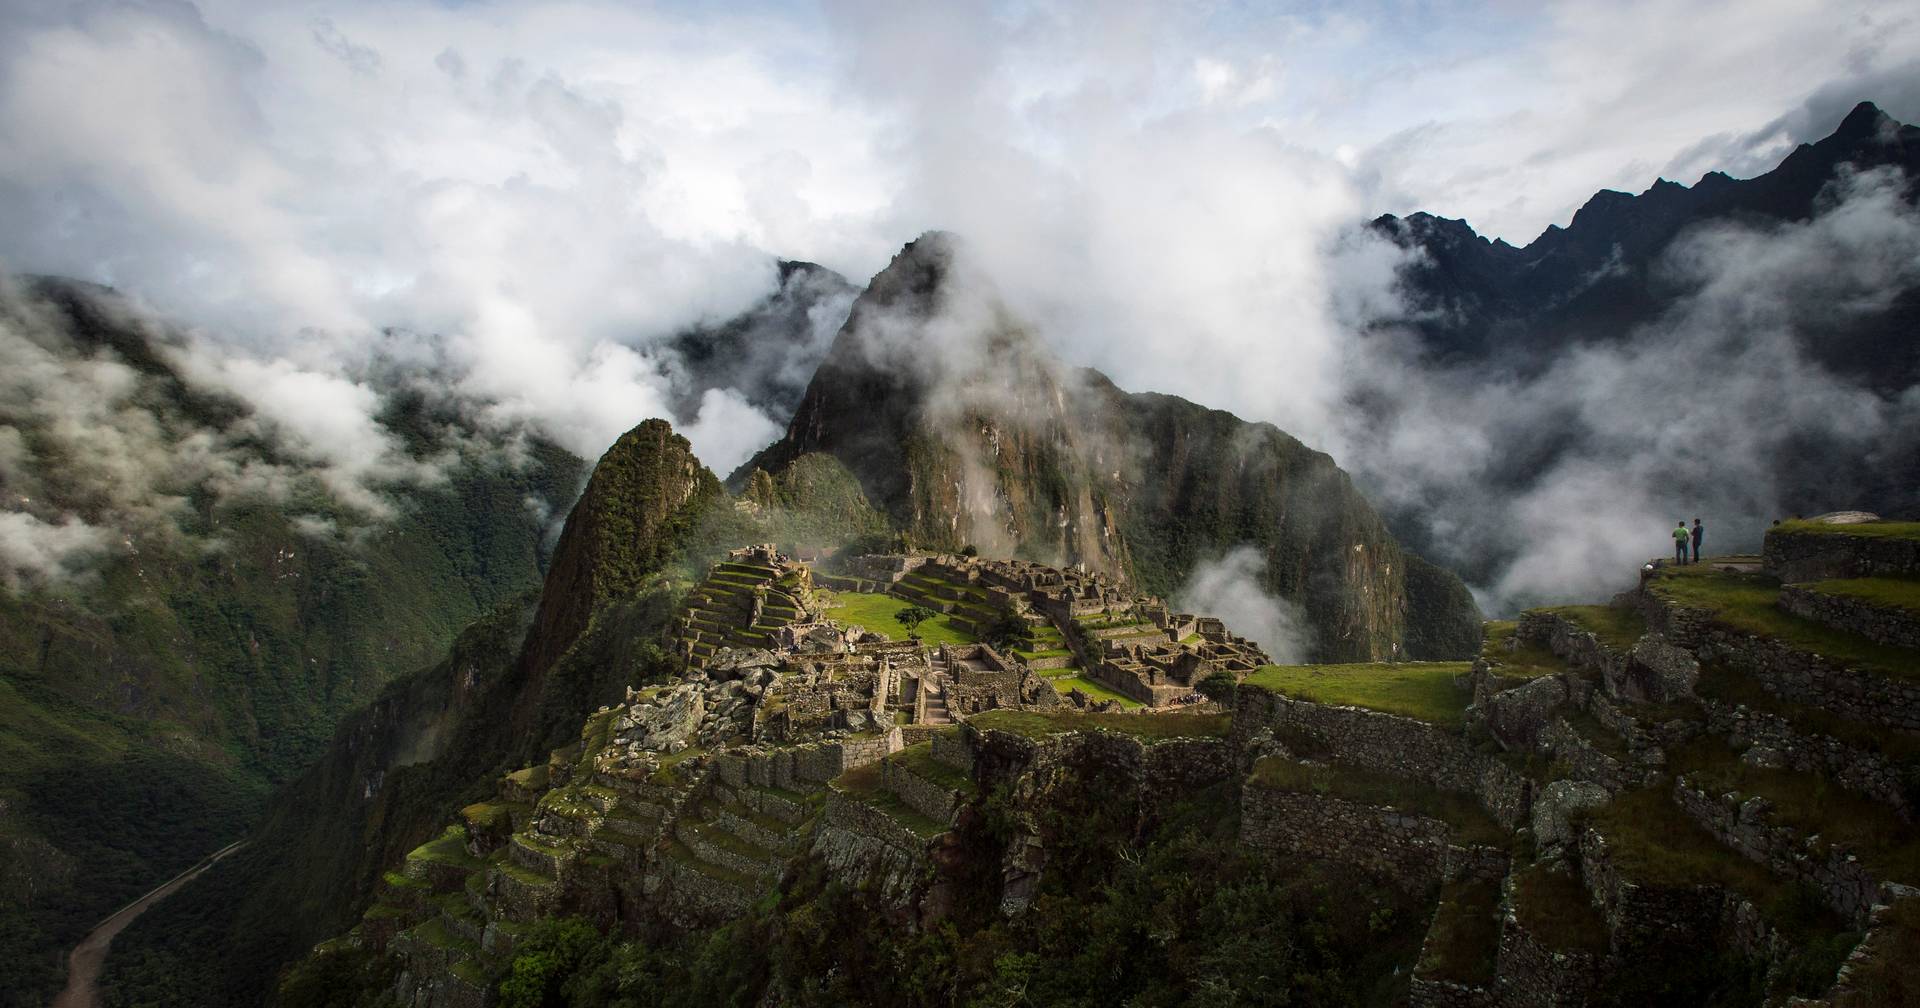 Quatro mortos e 16 feridos em acidente de autocarro após visita a Machu Picchu, no Peru